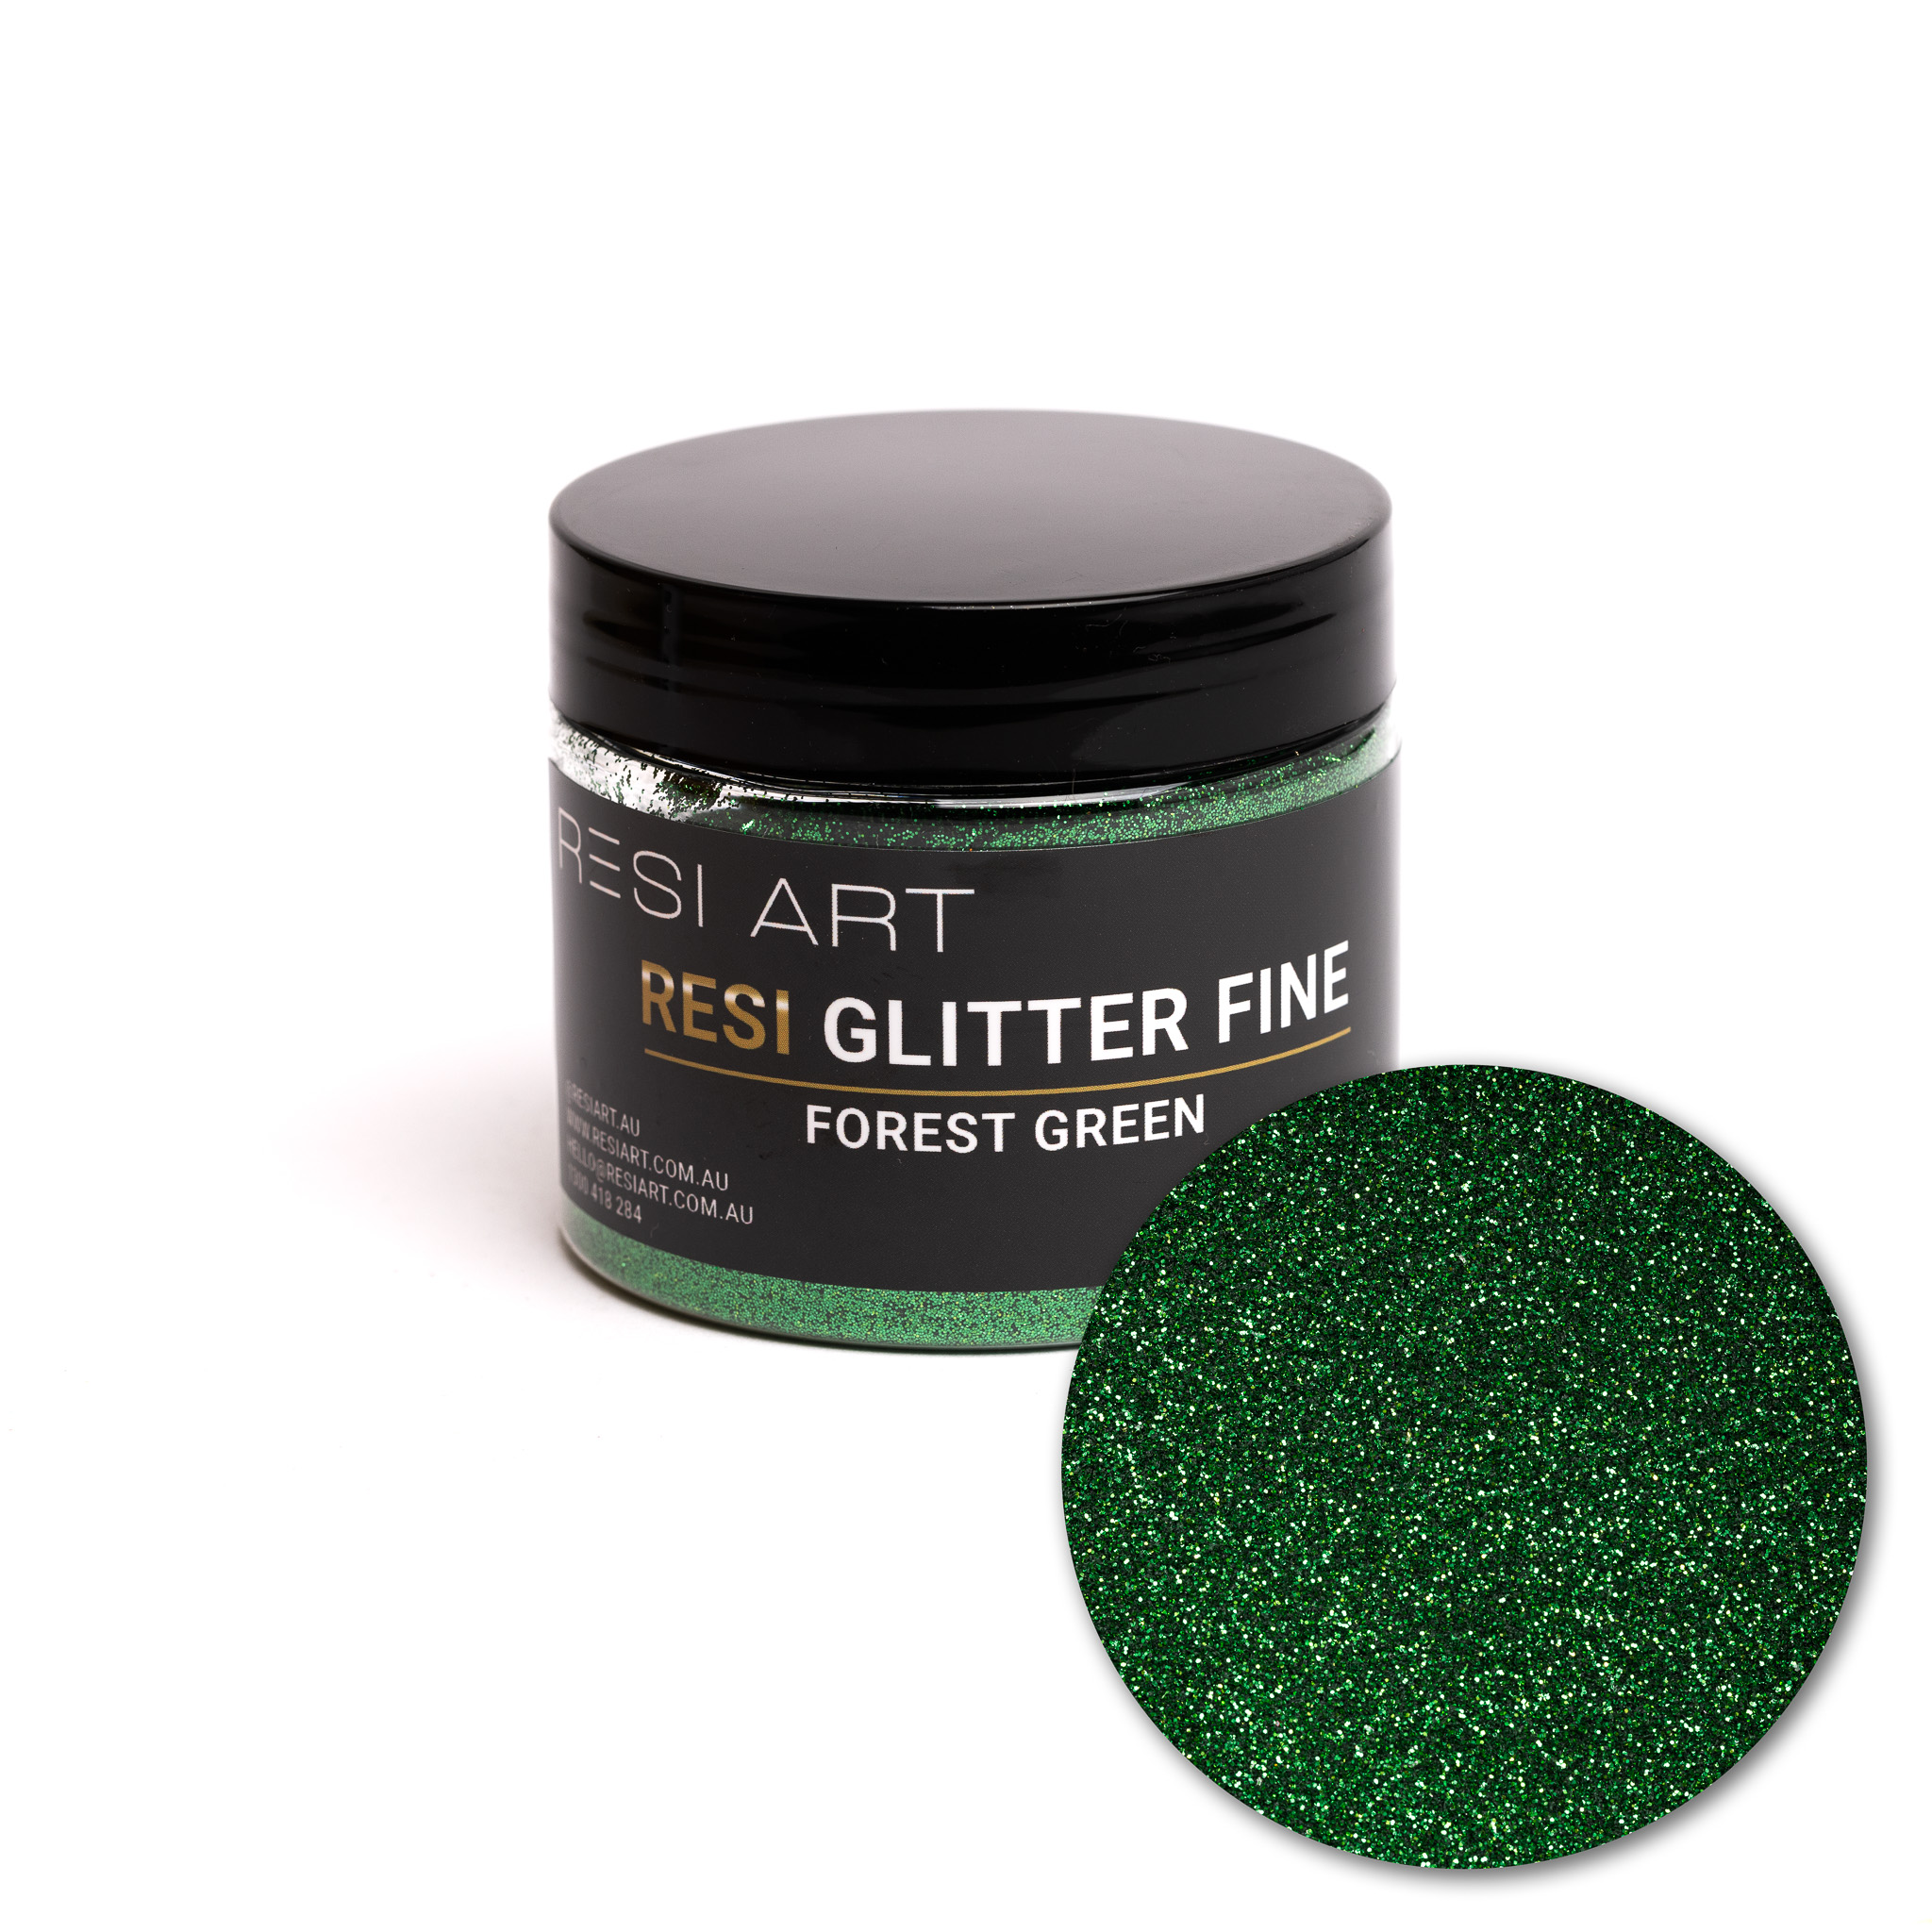 Forest Green 100g - Resi Glitter Fine